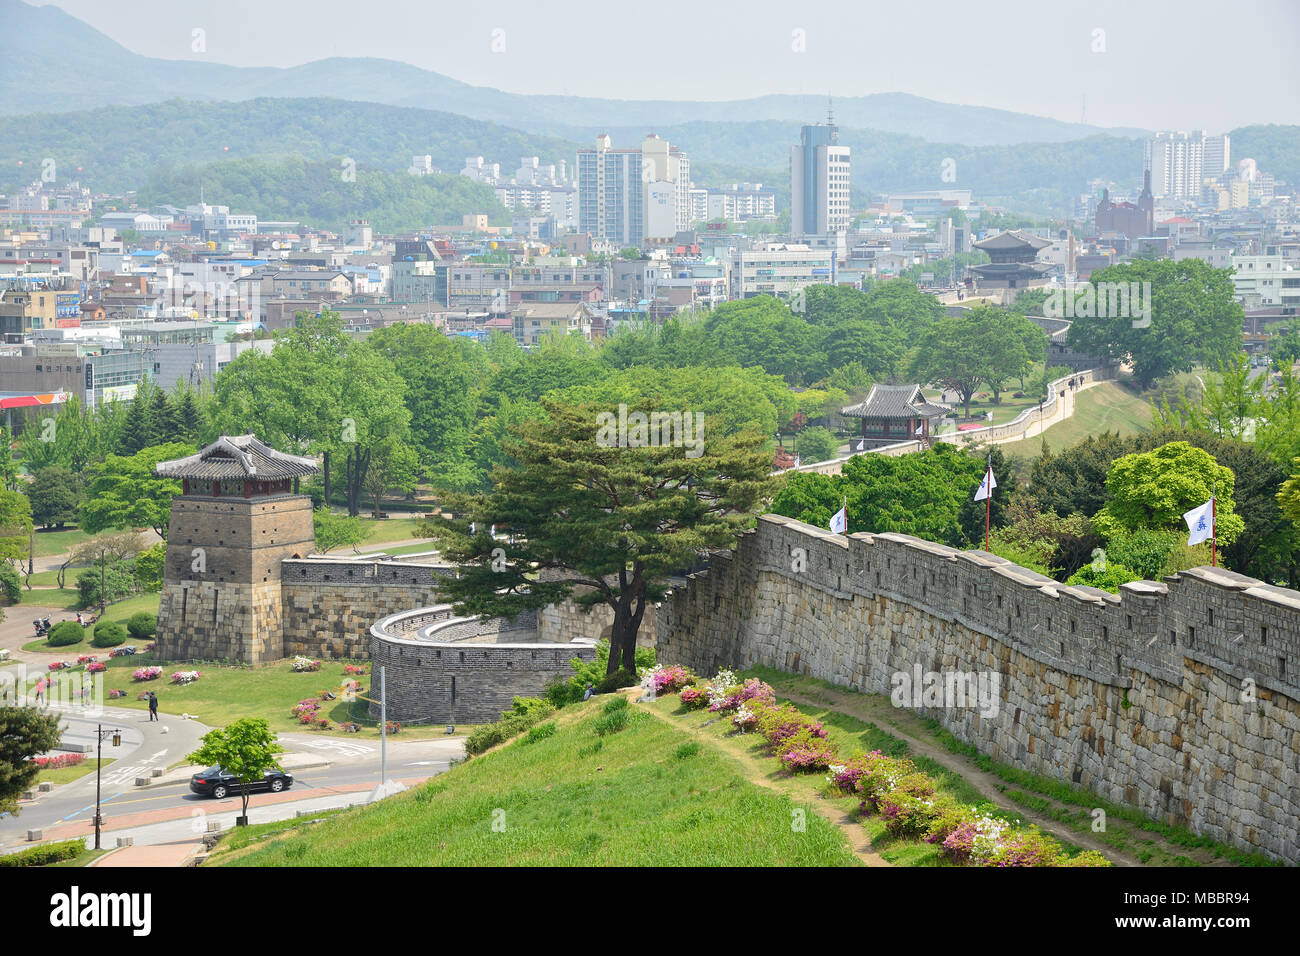 SUWON, KOREA - Mai 02, 2014: Hwaseong ist die Mauer im Zentrum von Suwon, der Provinzhauptstadt von Gyeonggi-do, Südkorea. Stockfoto